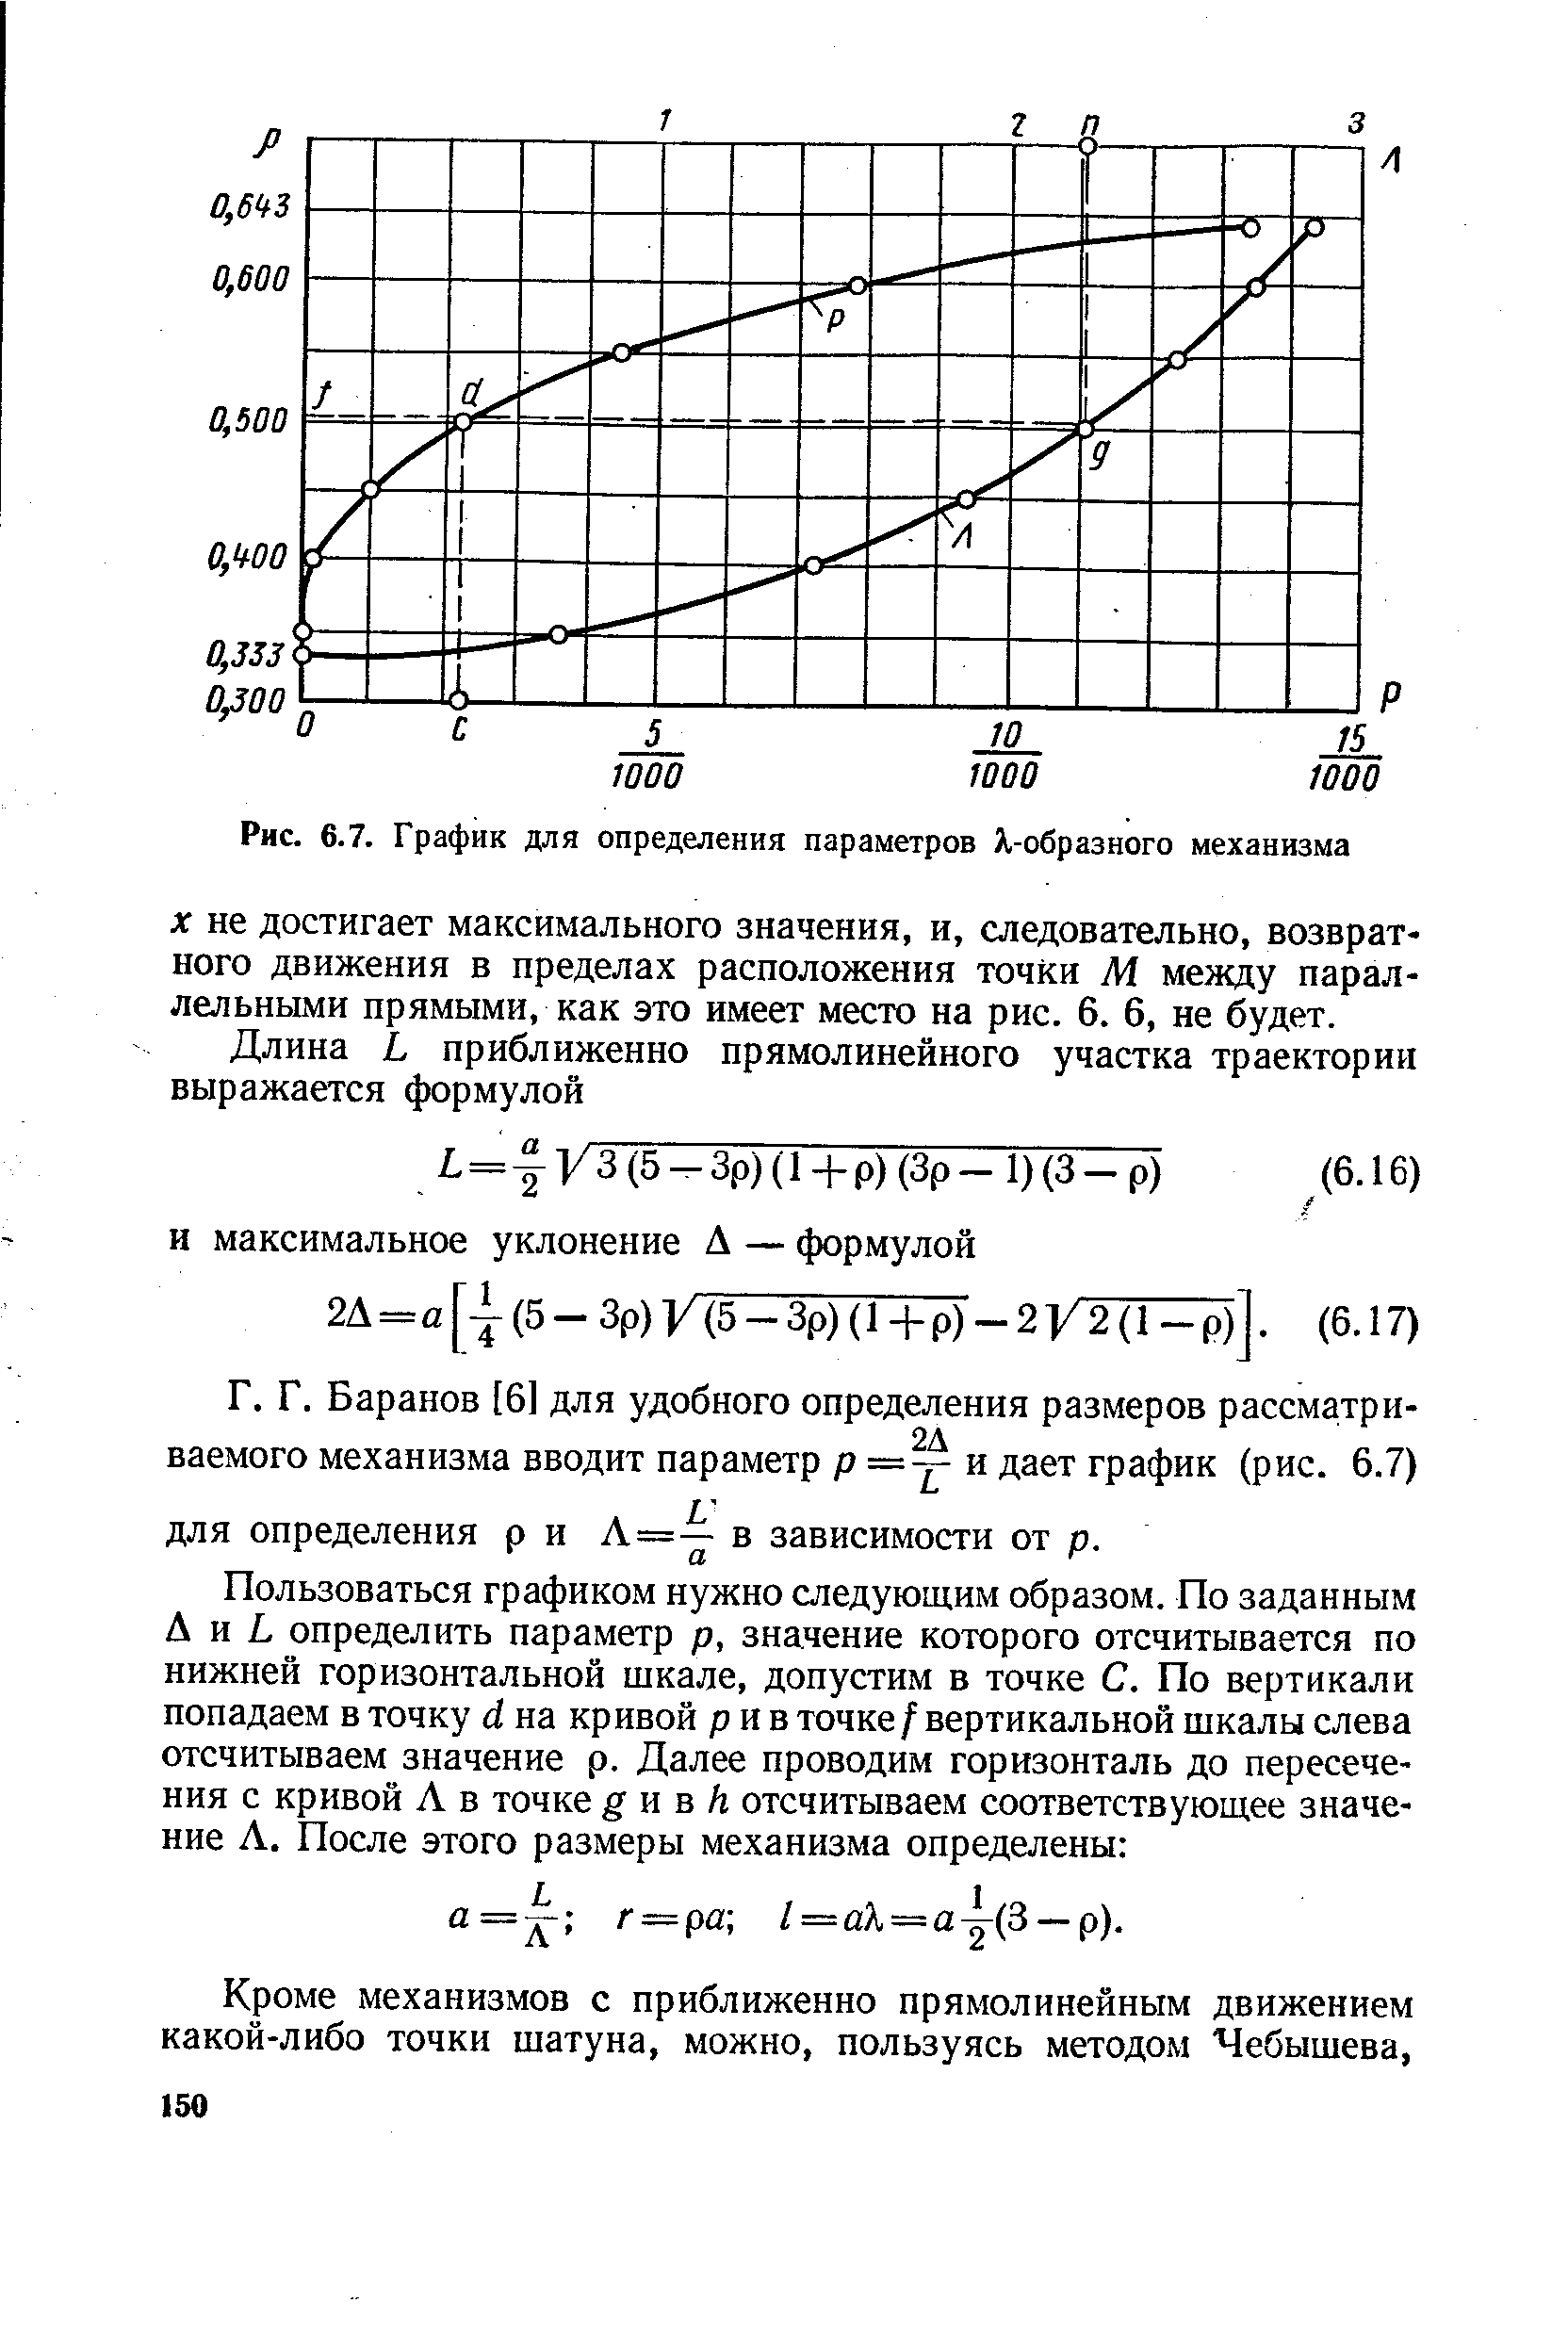 Рис. 6.7. График для определения параметров Х-образного механизма
